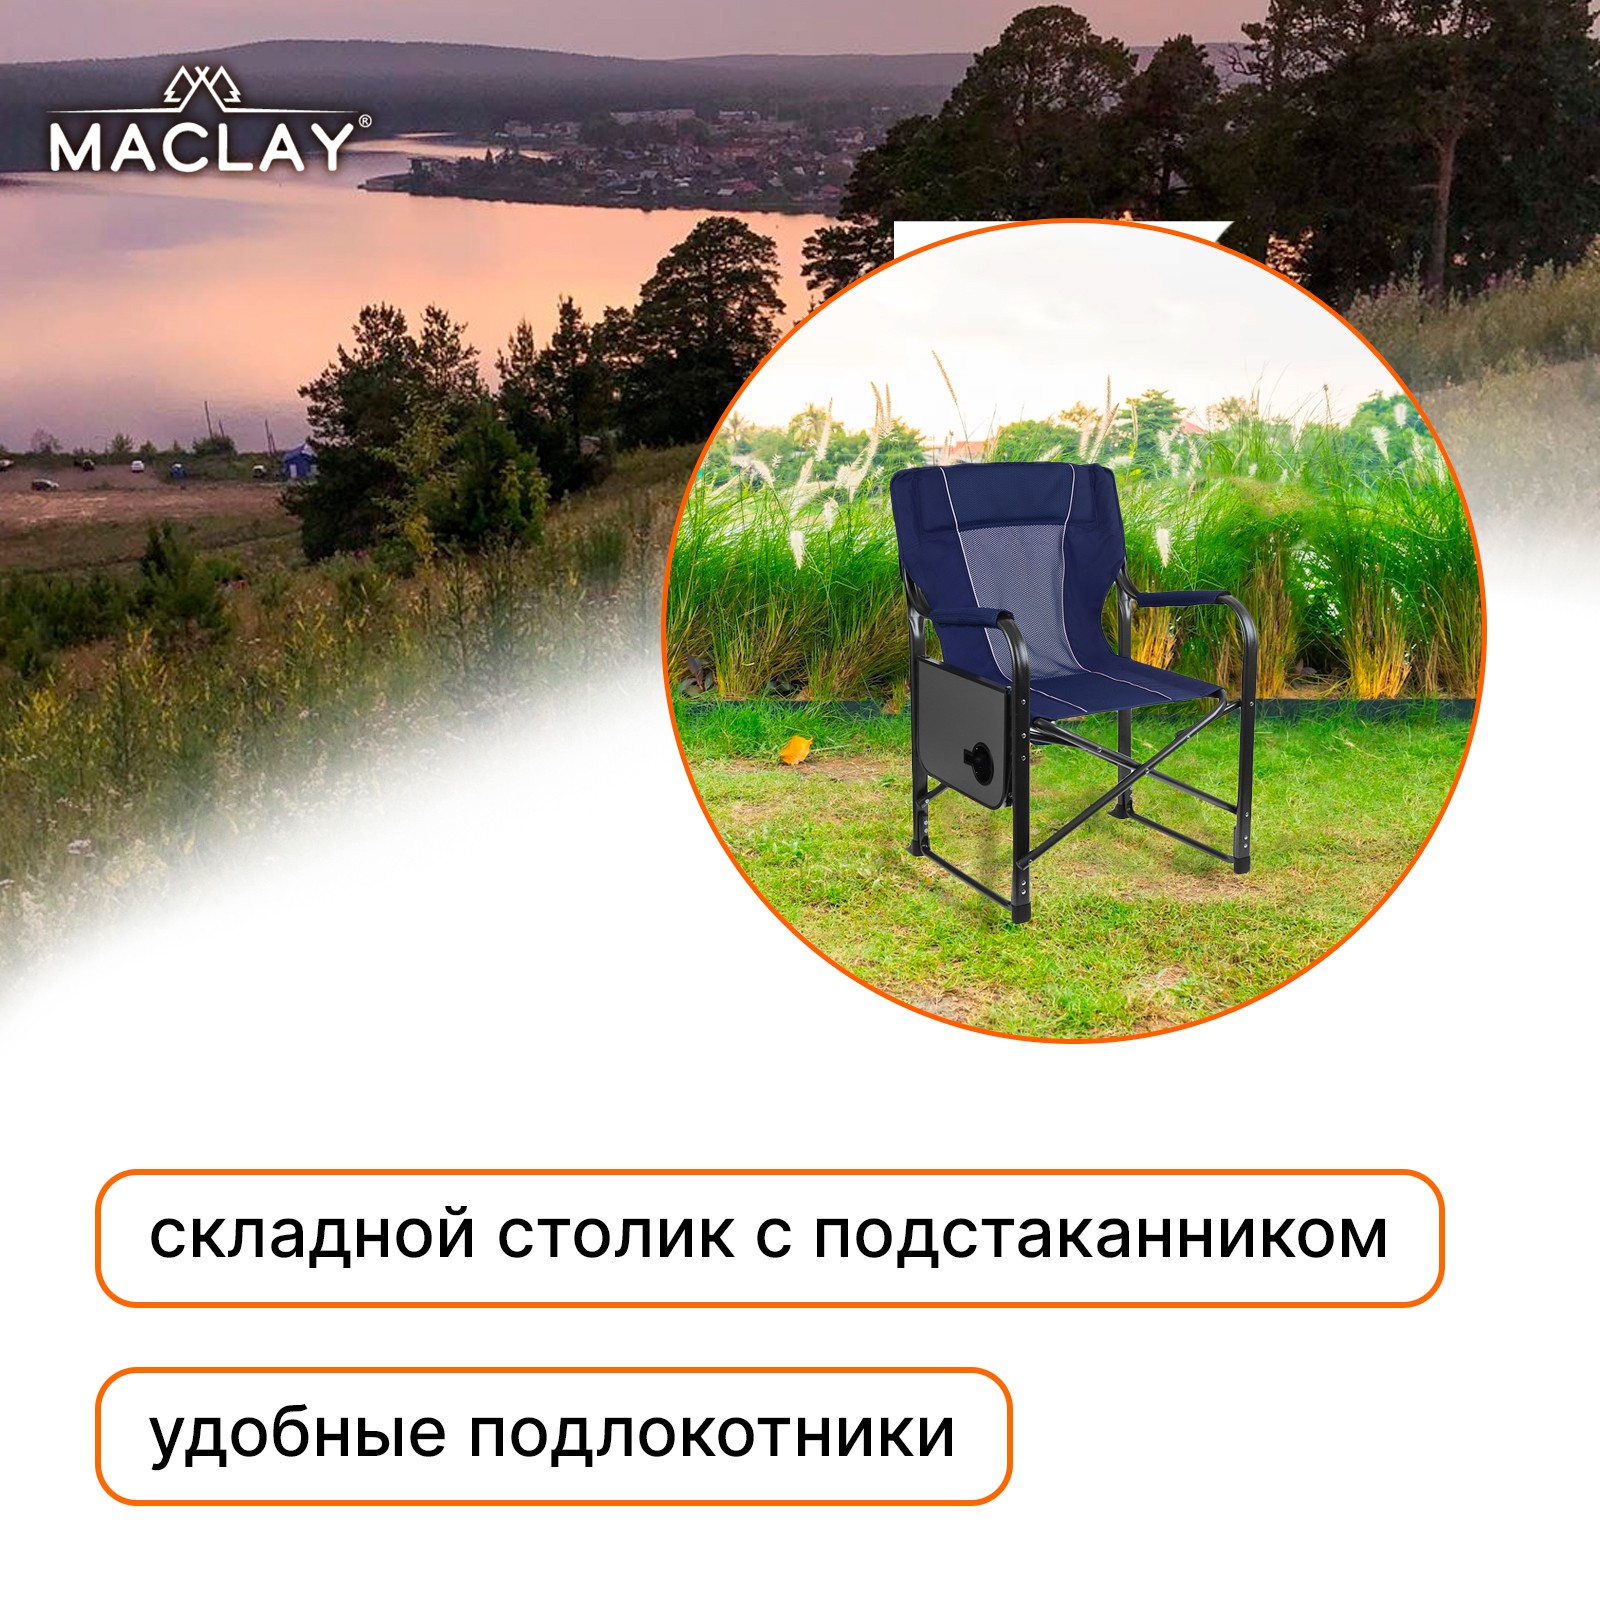 Кресло Maclay туристическое стол с подстаканником р. 63 х 47 х 94 см цвет синий - фото 9